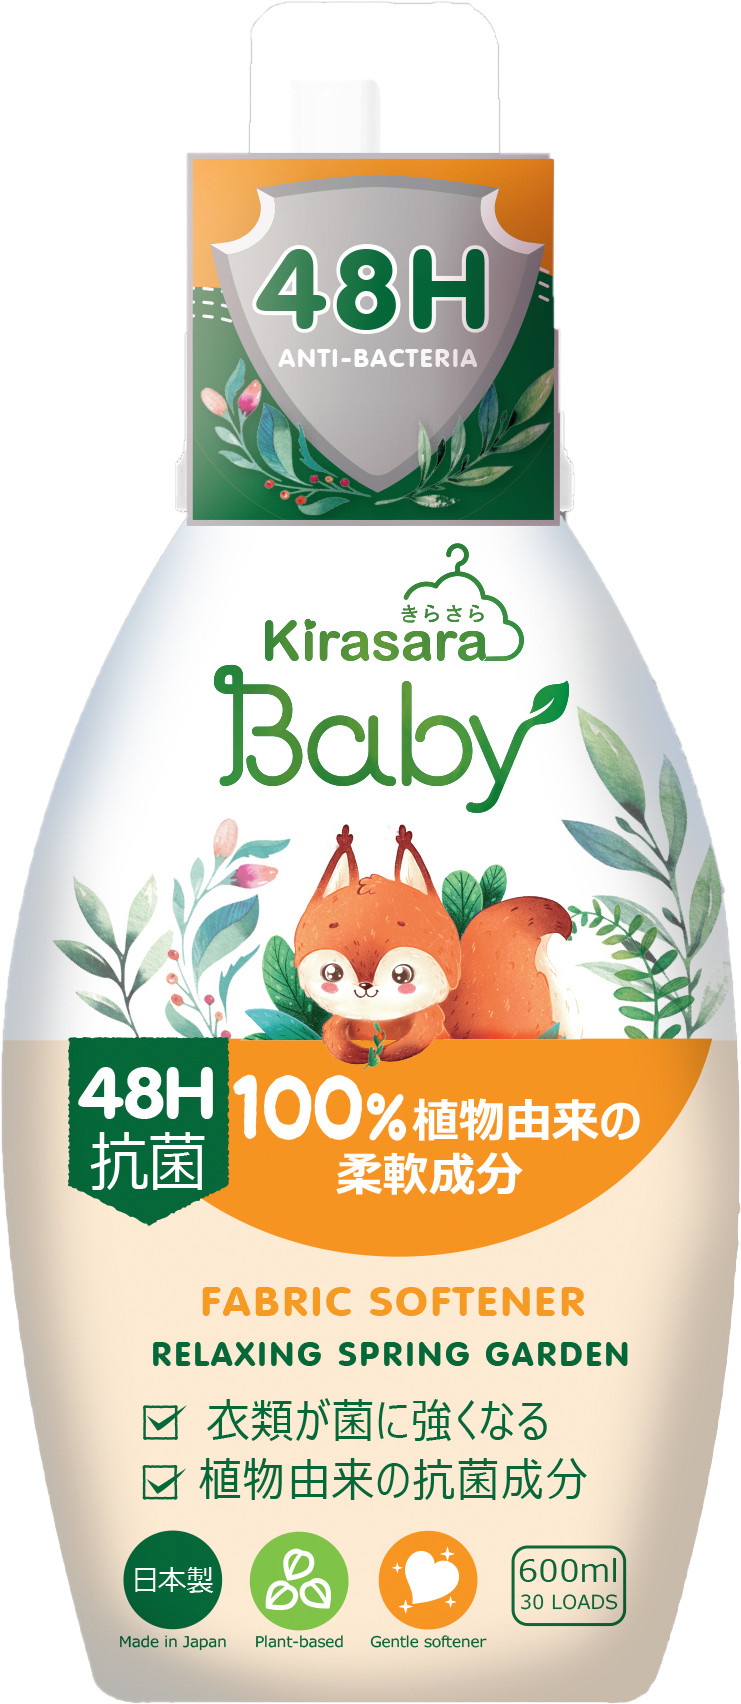 Chương trình khuyến mãi sữa Morinaga T05/23 (3)